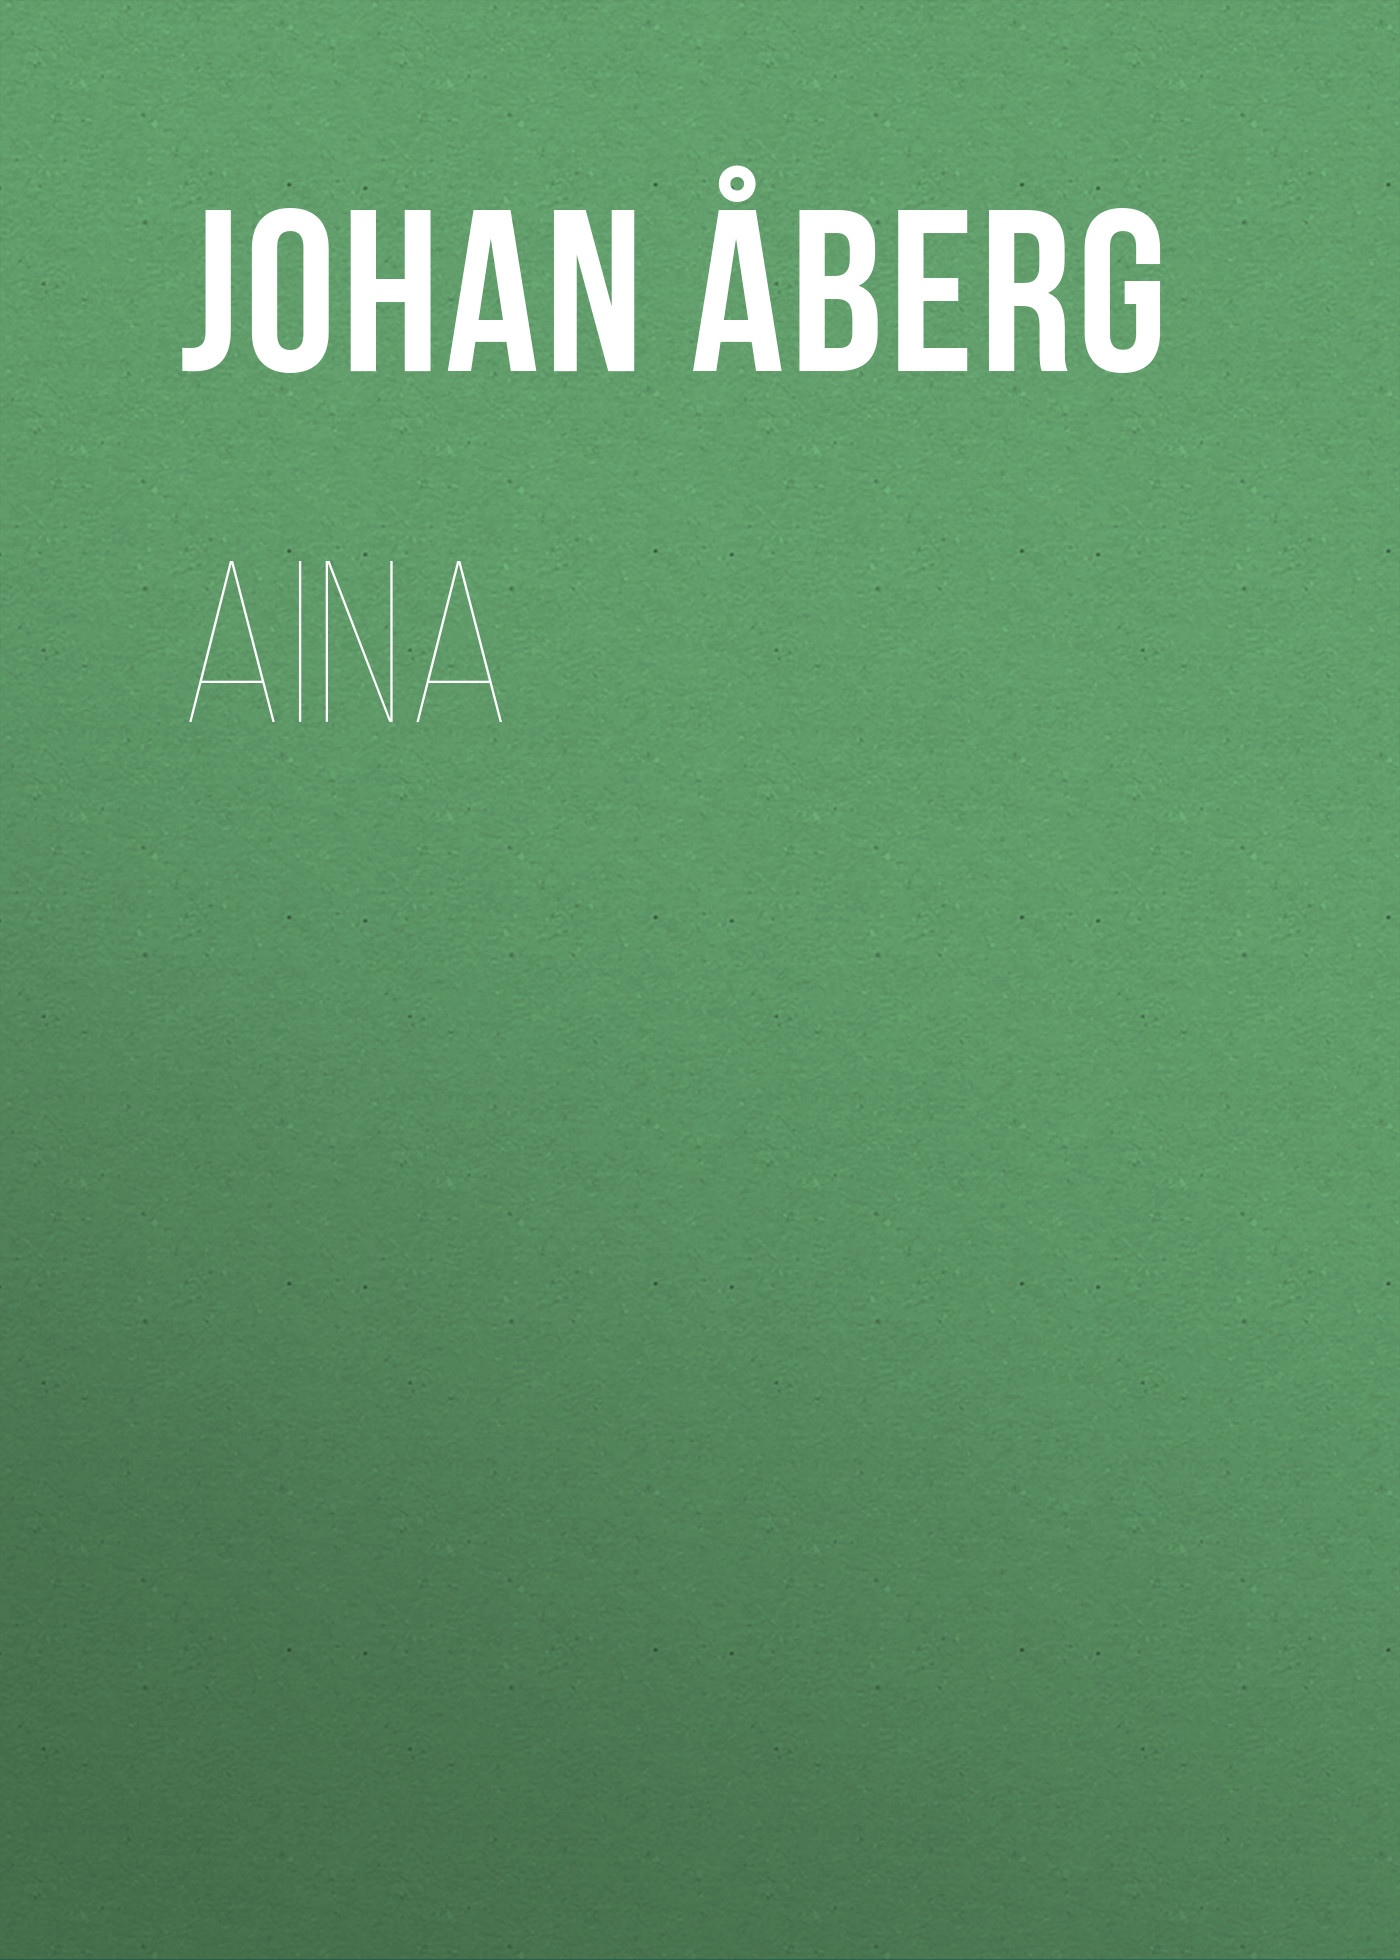 Книга Aina из серии , созданная Johan Åberg, может относится к жанру Зарубежная старинная литература, Зарубежная классика. Стоимость электронной книги Aina с идентификатором 24174236 составляет 5.99 руб.